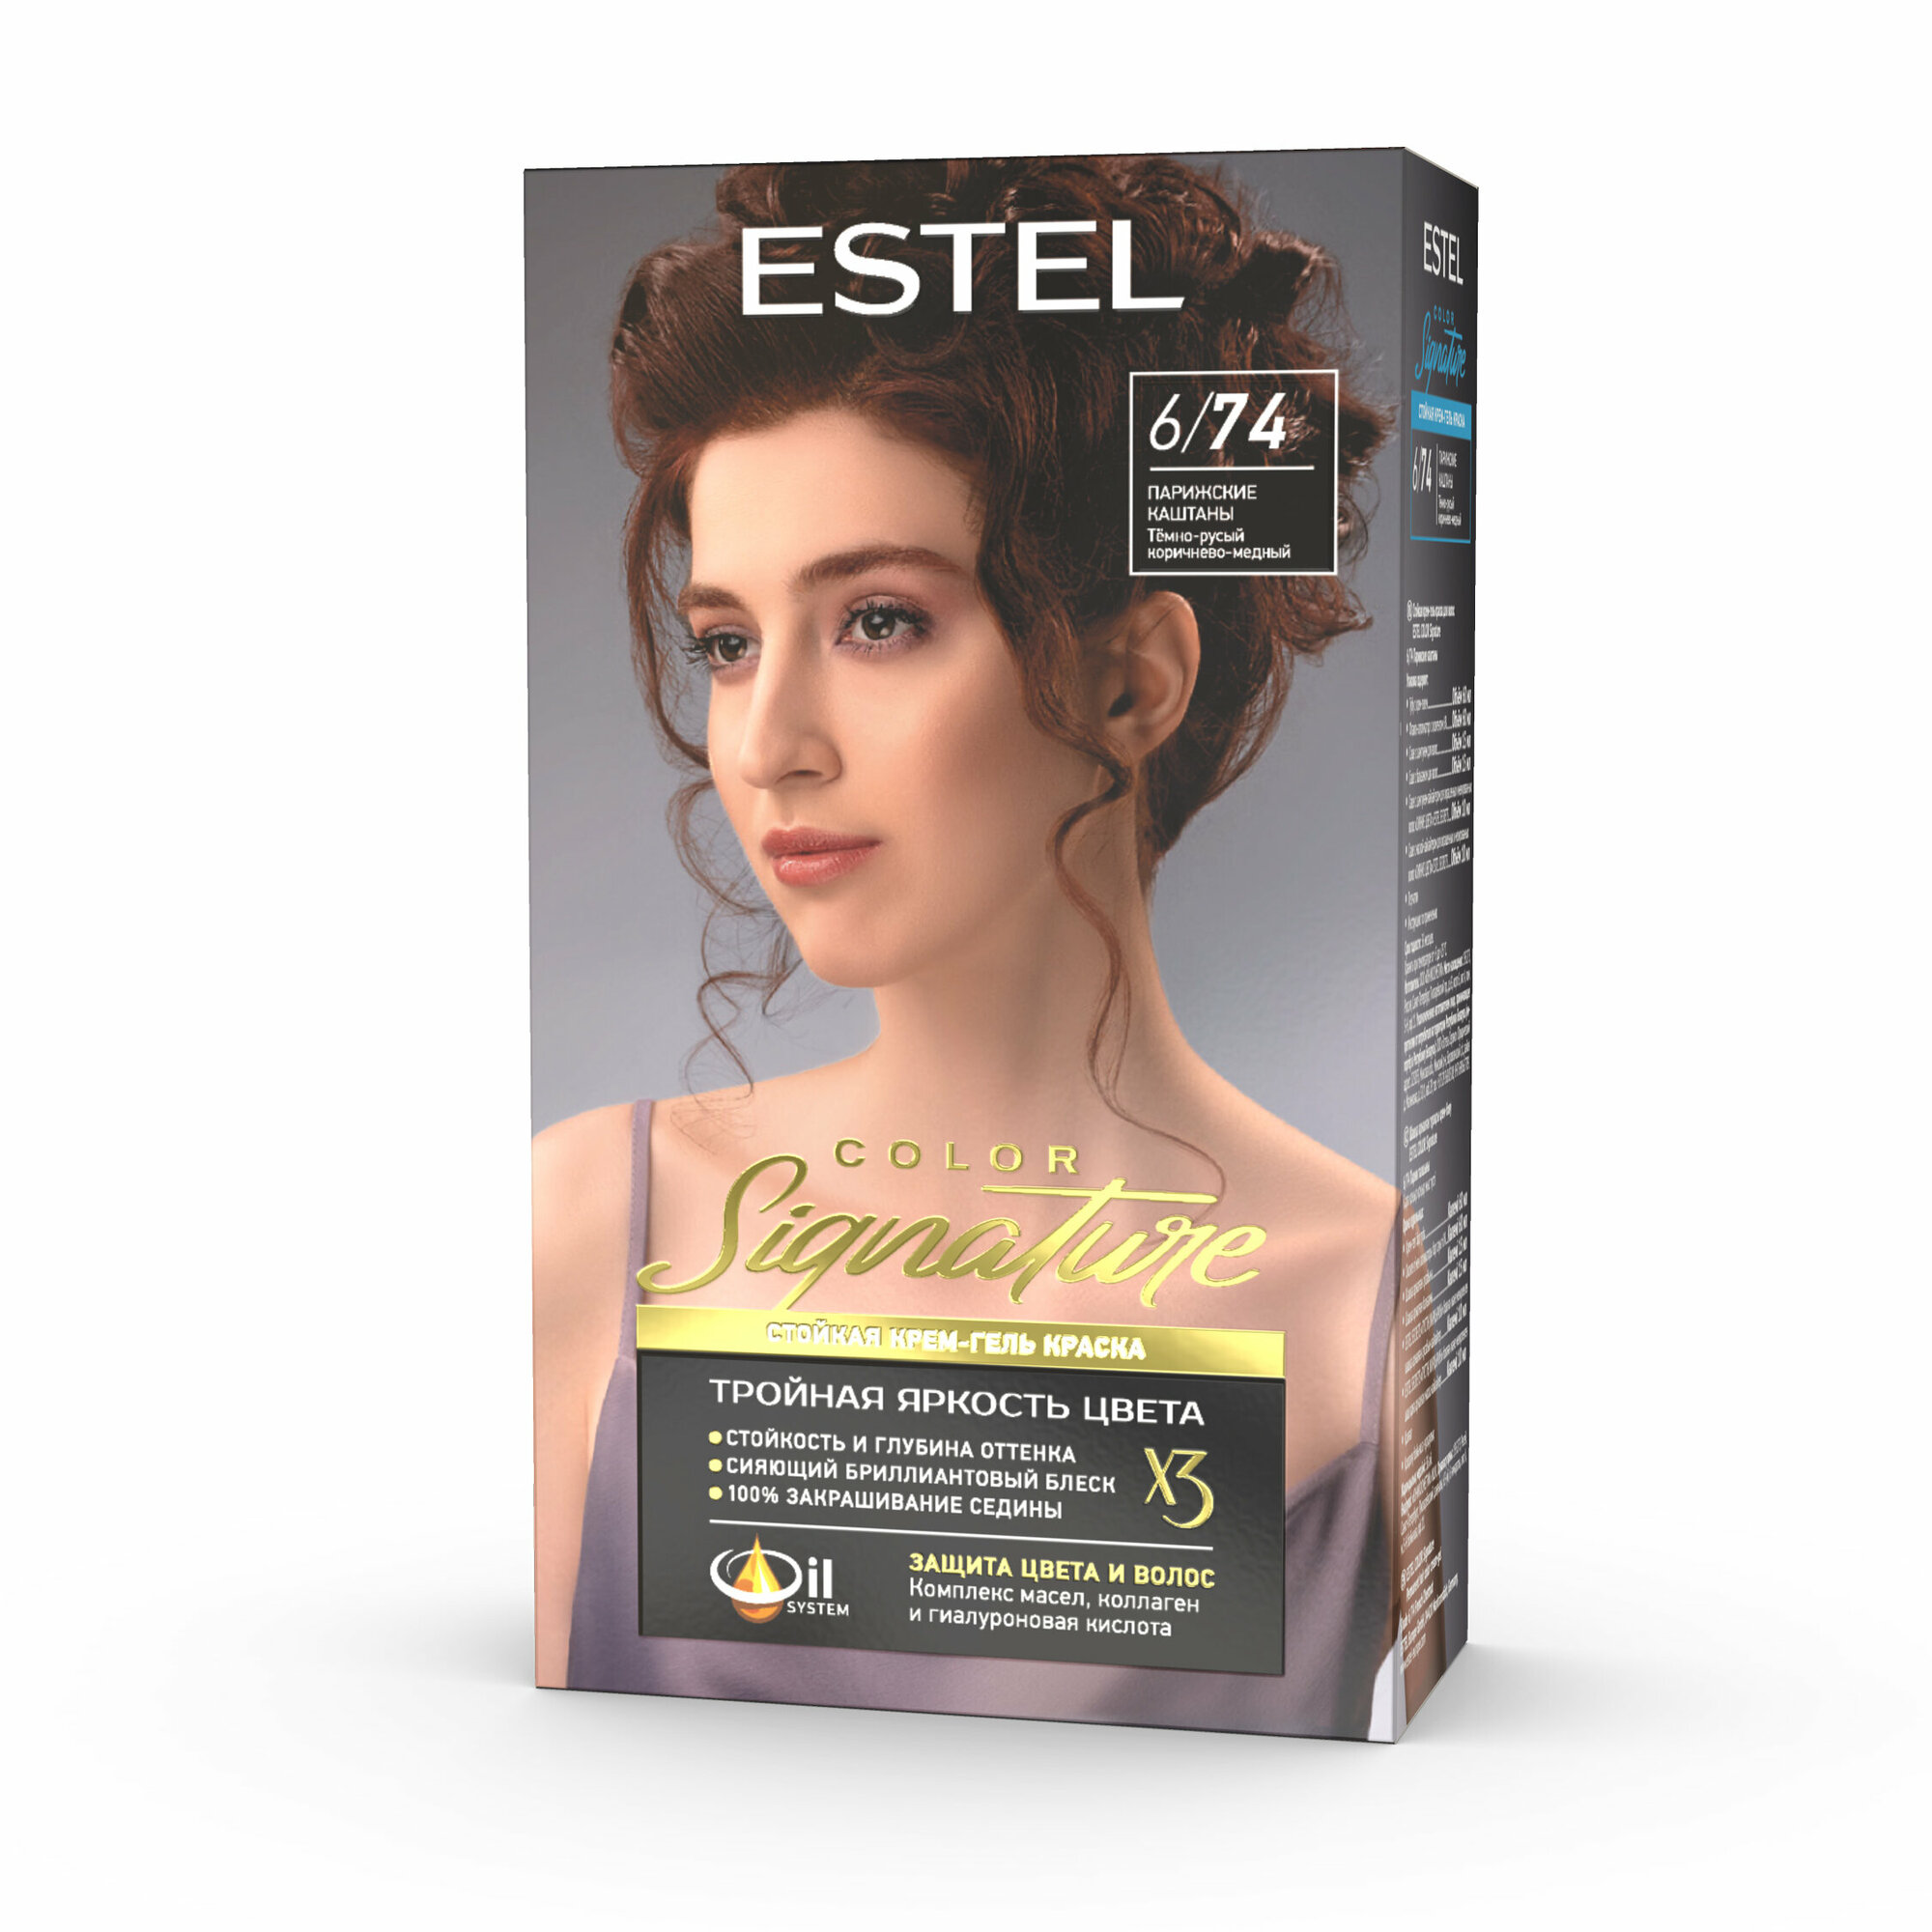 Крем-гель краска Estel color signature стойкая для волос 6/74 парижские каштаны